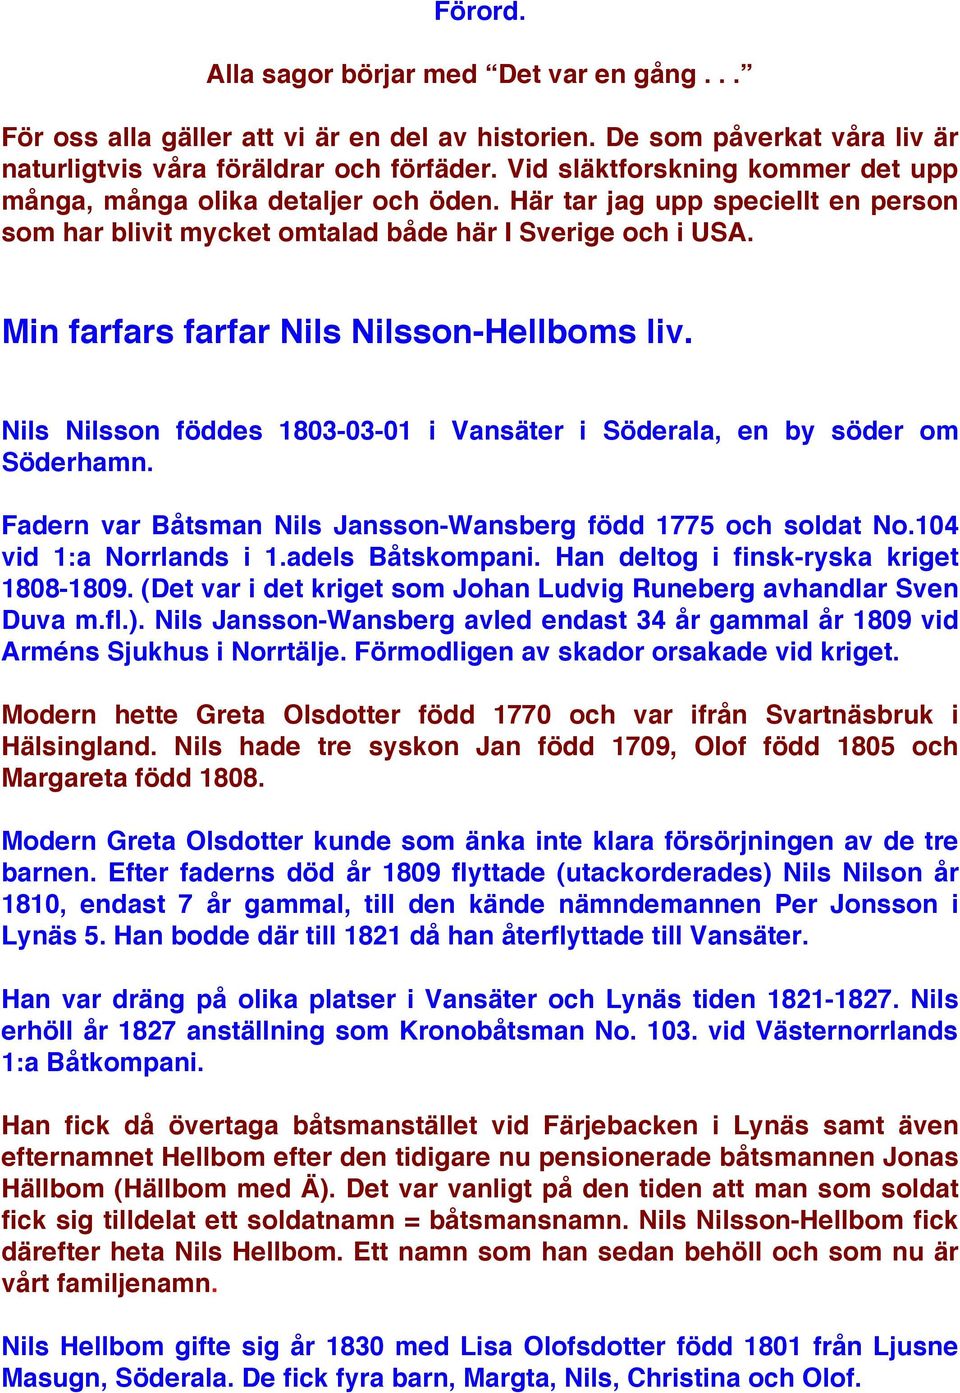 Min farfars farfar Nils Nilsson-Hellboms liv. Nils Nilsson föddes 1803-03-01 i Vansäter i Söderala, en by söder om Söderhamn. Fadern var Båtsman Nils Jansson-Wansberg född 1775 och soldat No.